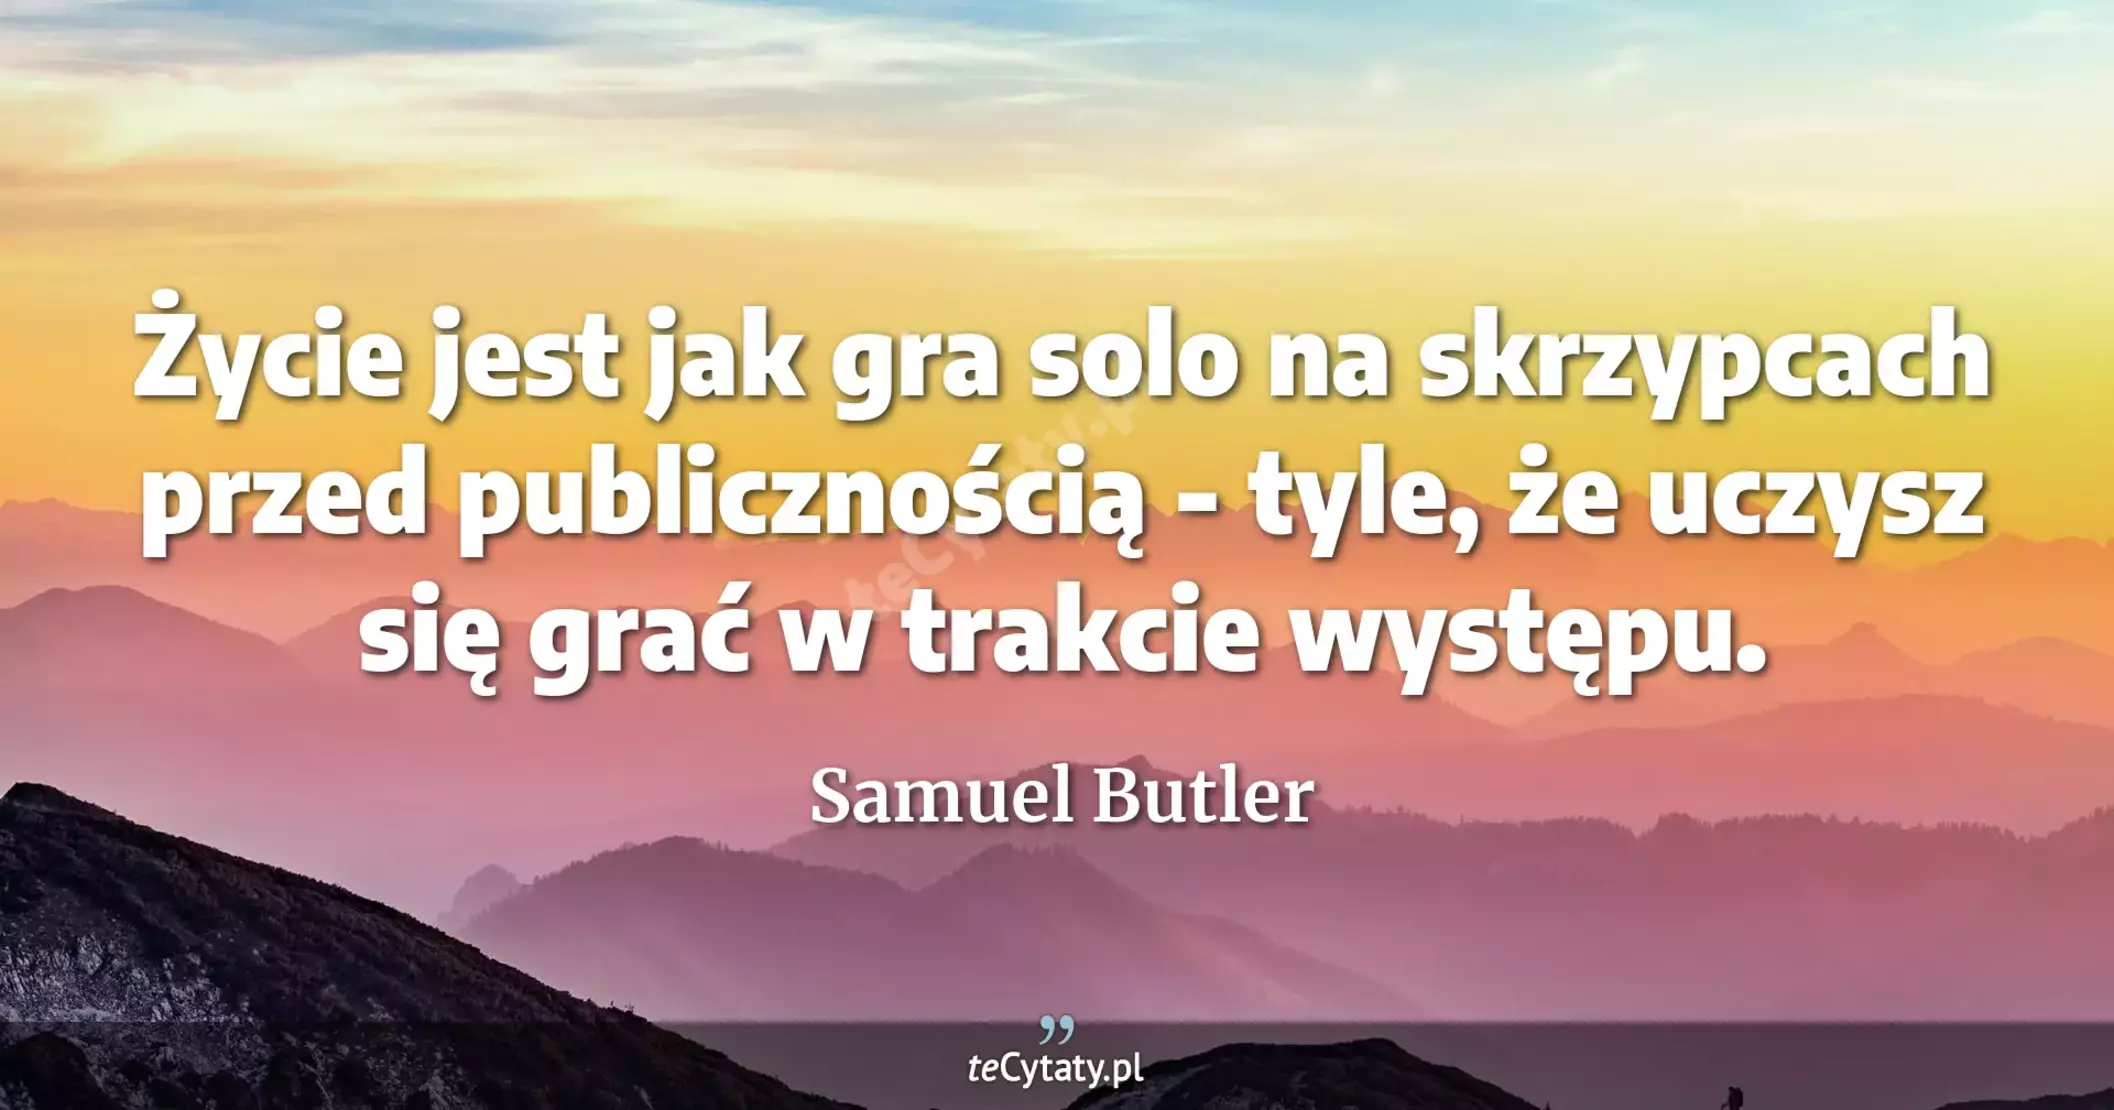 Życie jest jak gra solo na skrzypcach przed publicznością - tyle, że uczysz się grać w trakcie występu. - Samuel Butler